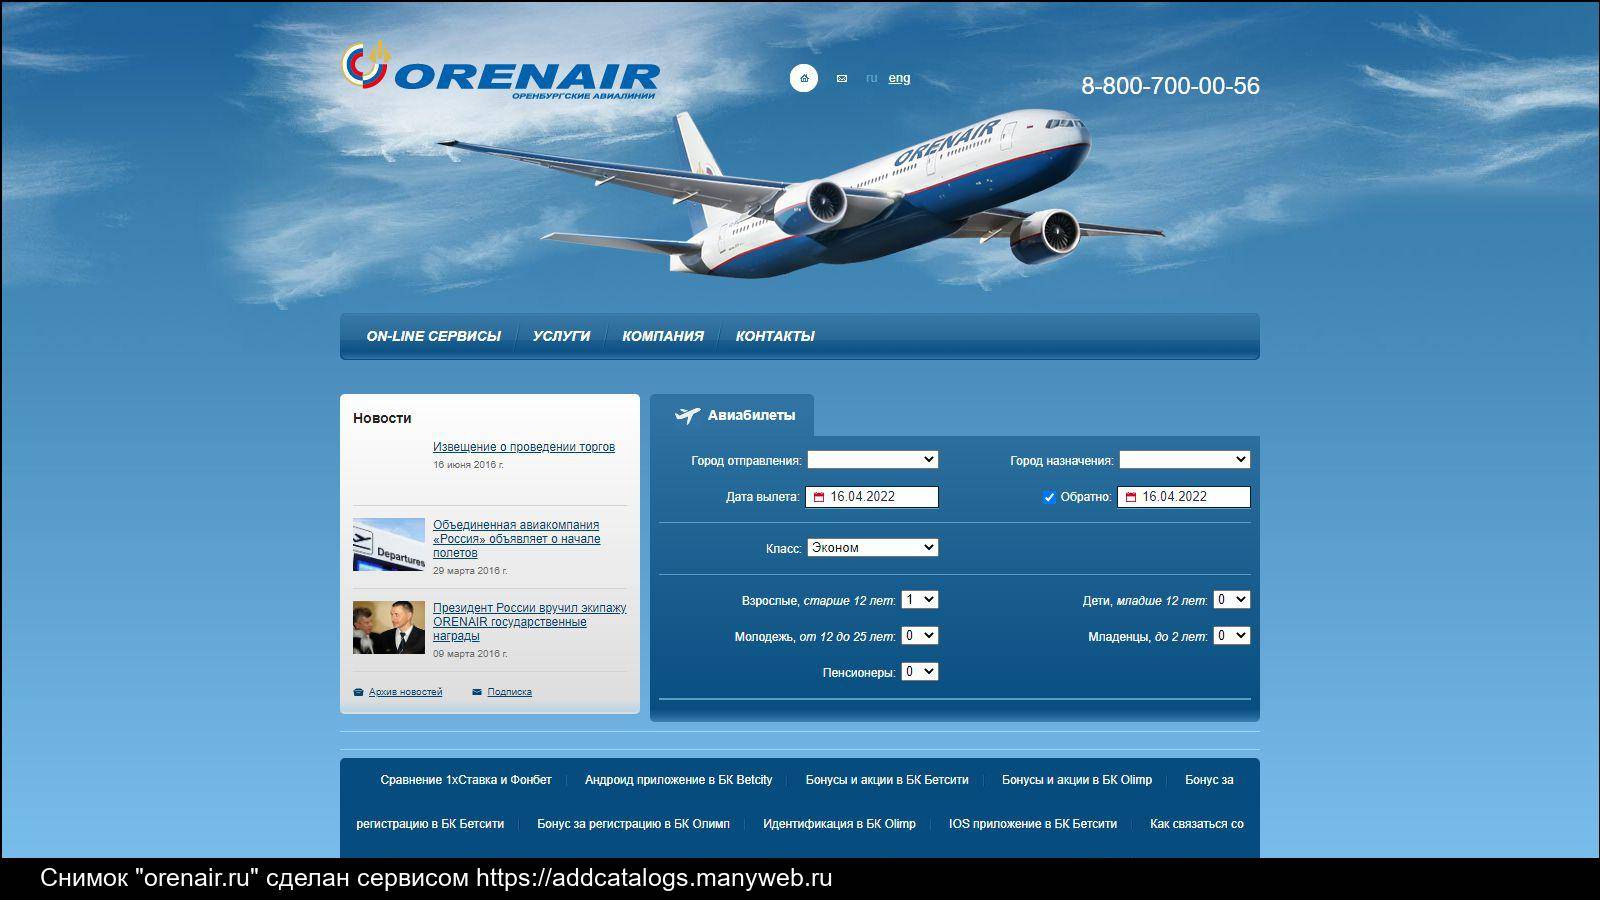 Оренбургские авиалинии (orenair) официальный сайт